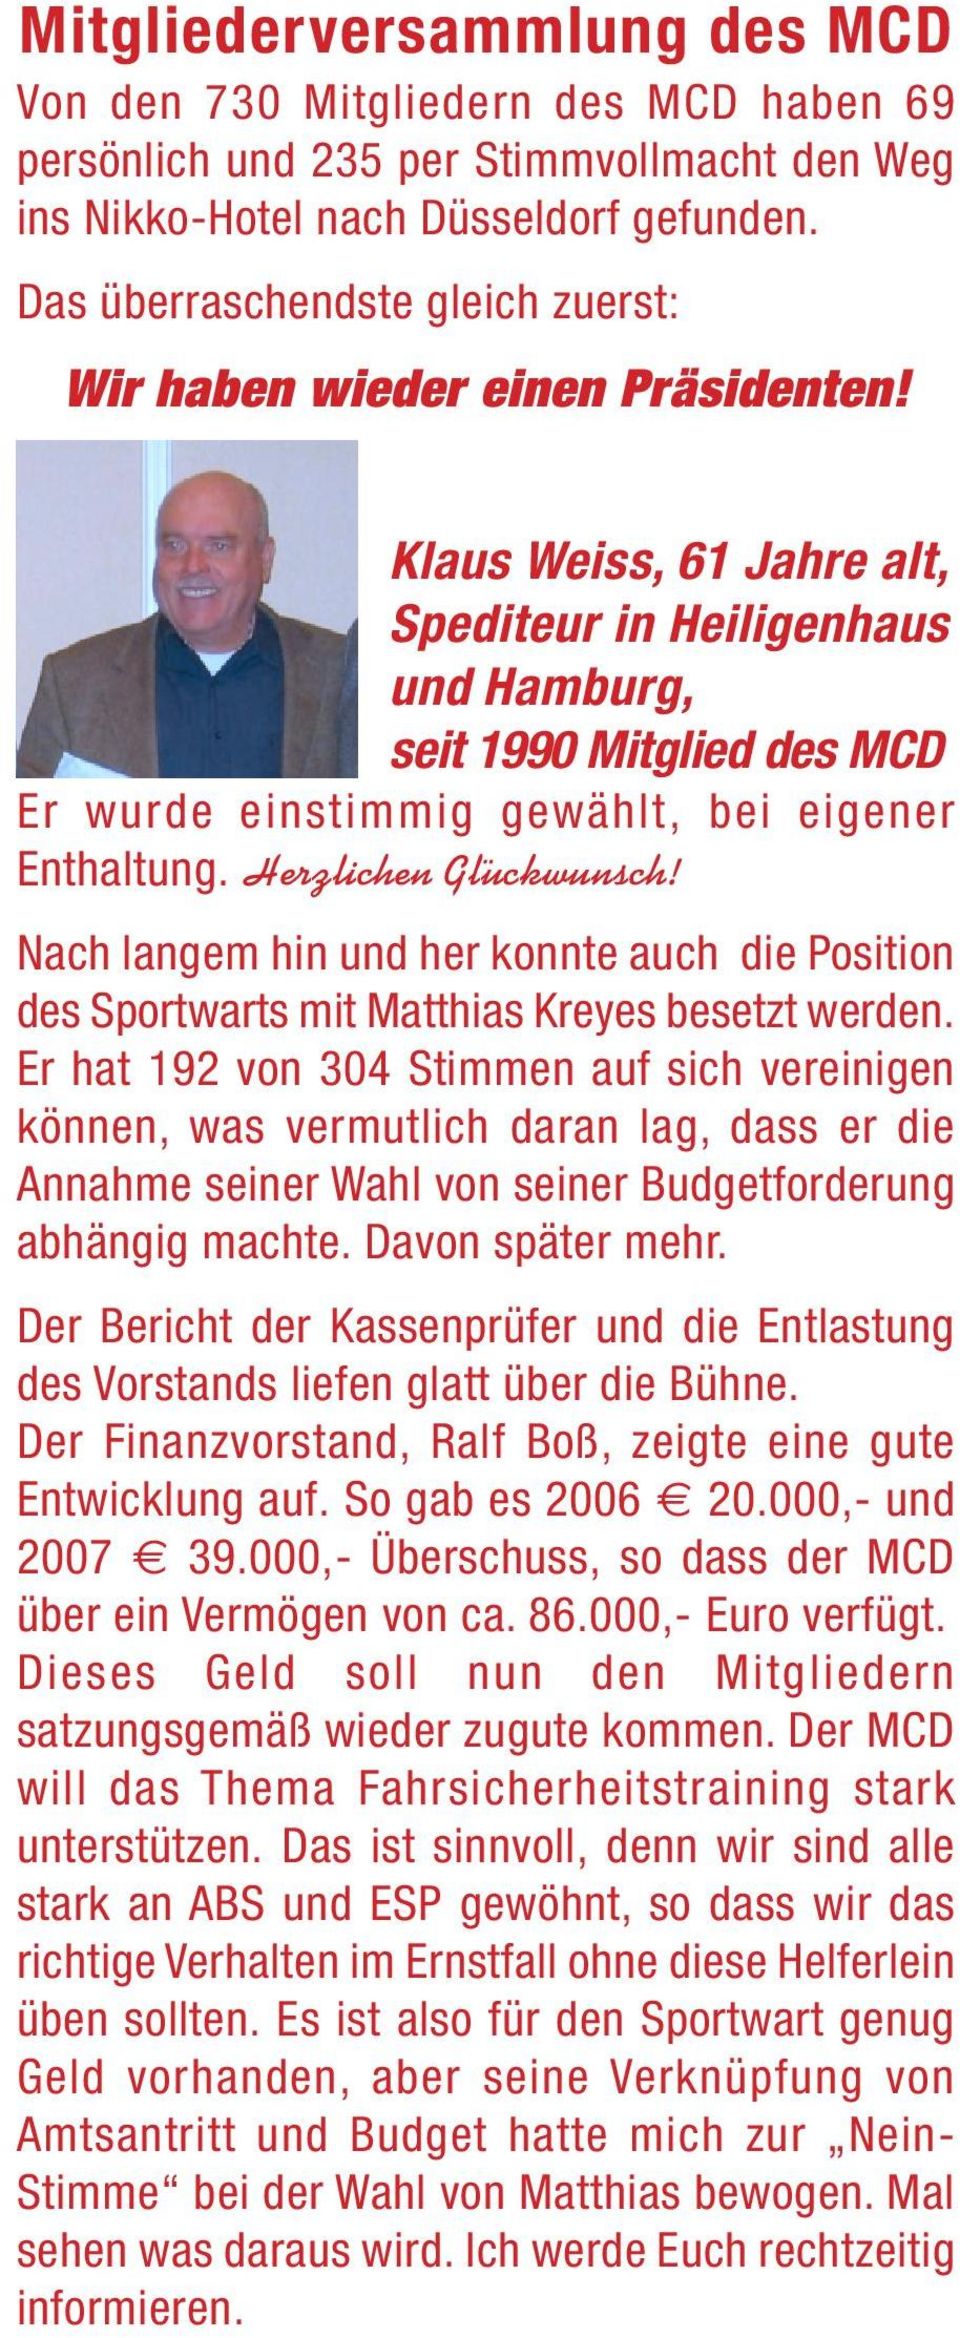 Klaus Weiss, 61 Jahre alt, Spediteur in Heiligenhaus und Hamburg, seit 1990 Mitglied des MCD Er wurde einstimmig gewählt, bei eigener Enthaltung. Herzlichen Glückwunsch!